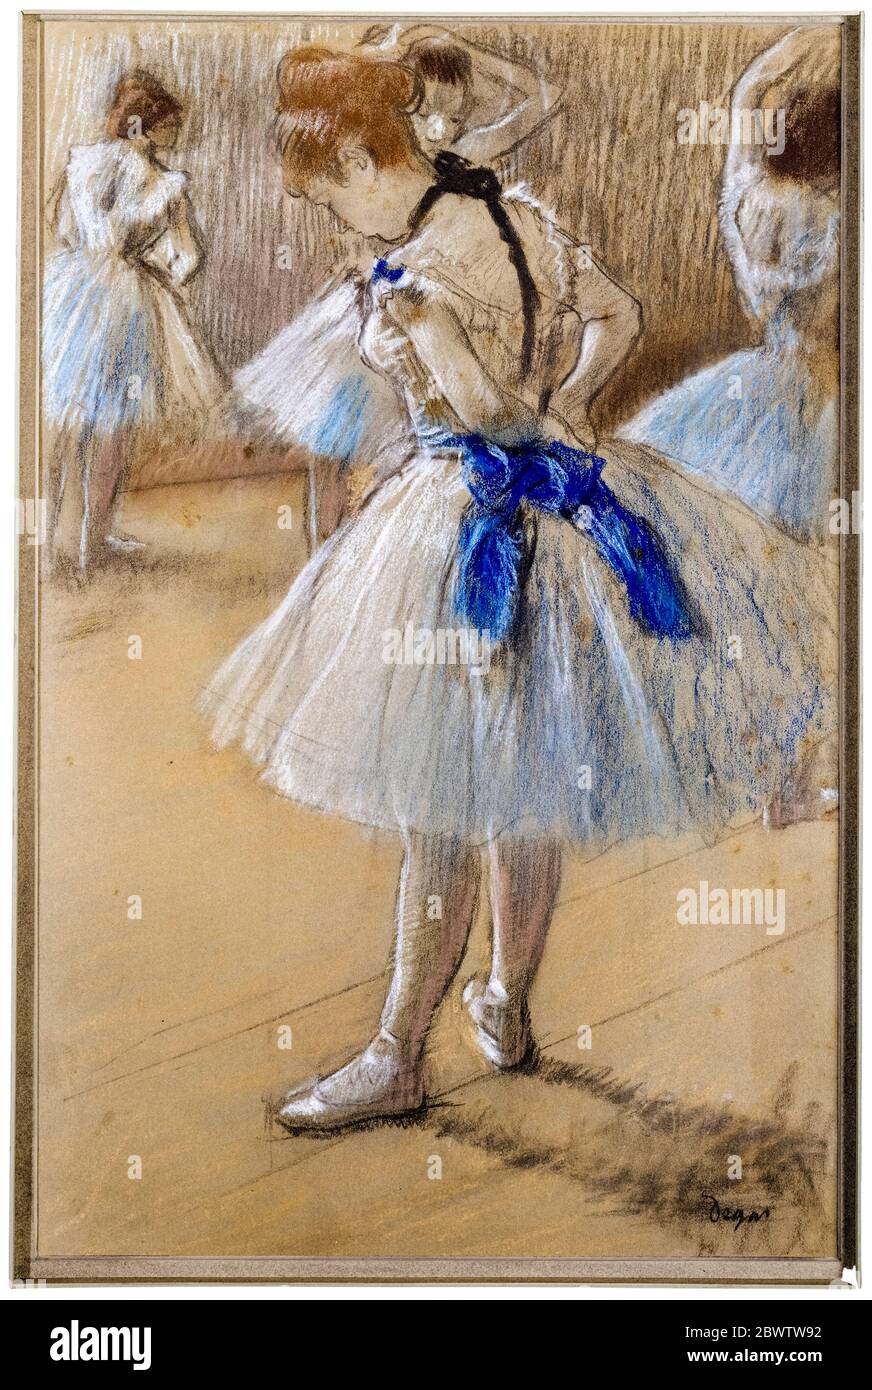 Why Did Edgar Degas' Little Dancer Cause Such a Scandal?